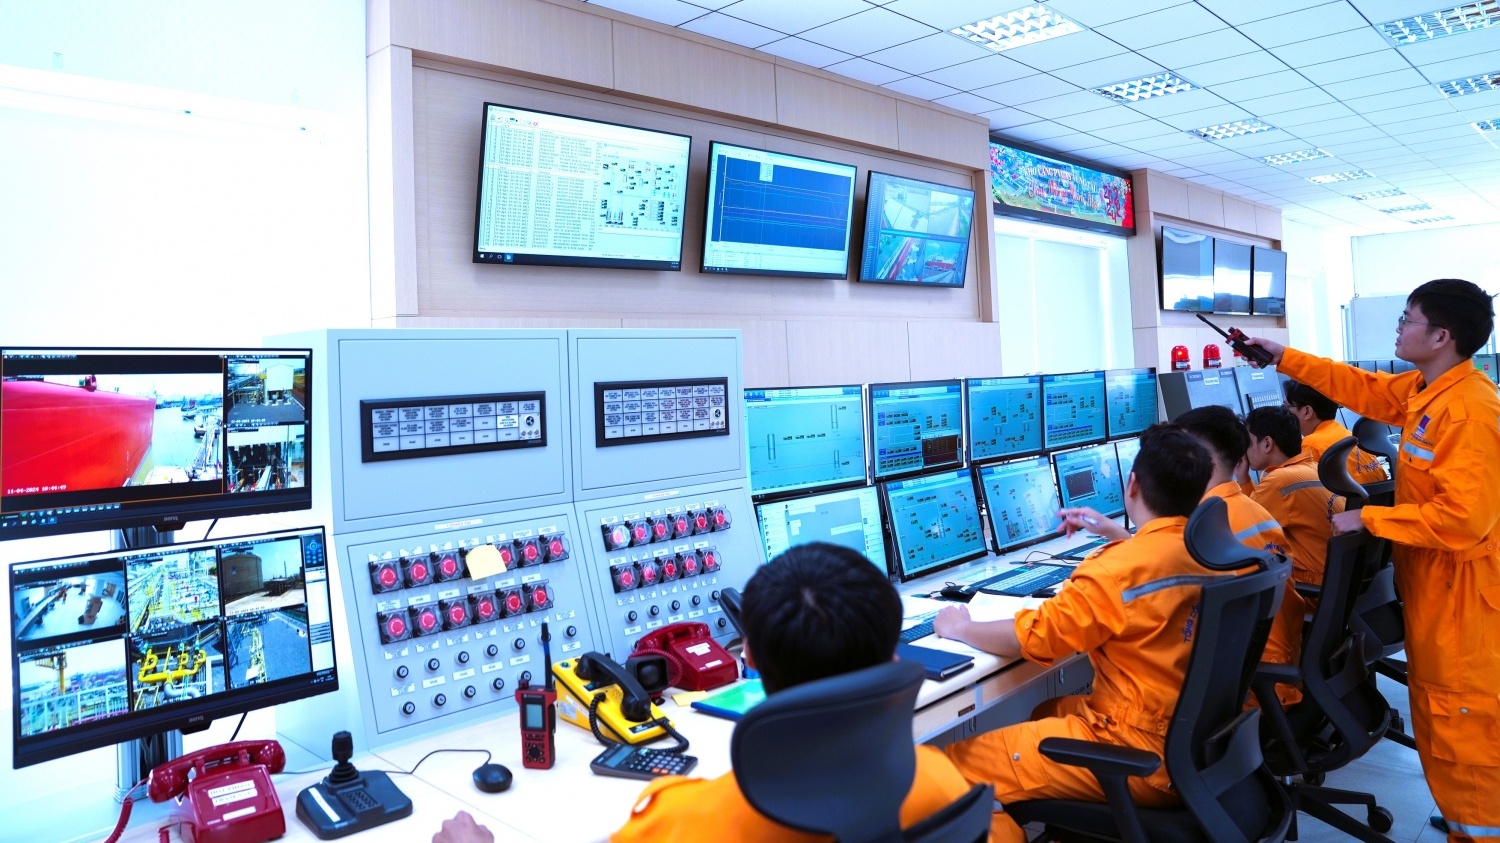 PV GAS tự tin nhập khẩu và kinh doanh LNG tại Việt Nam